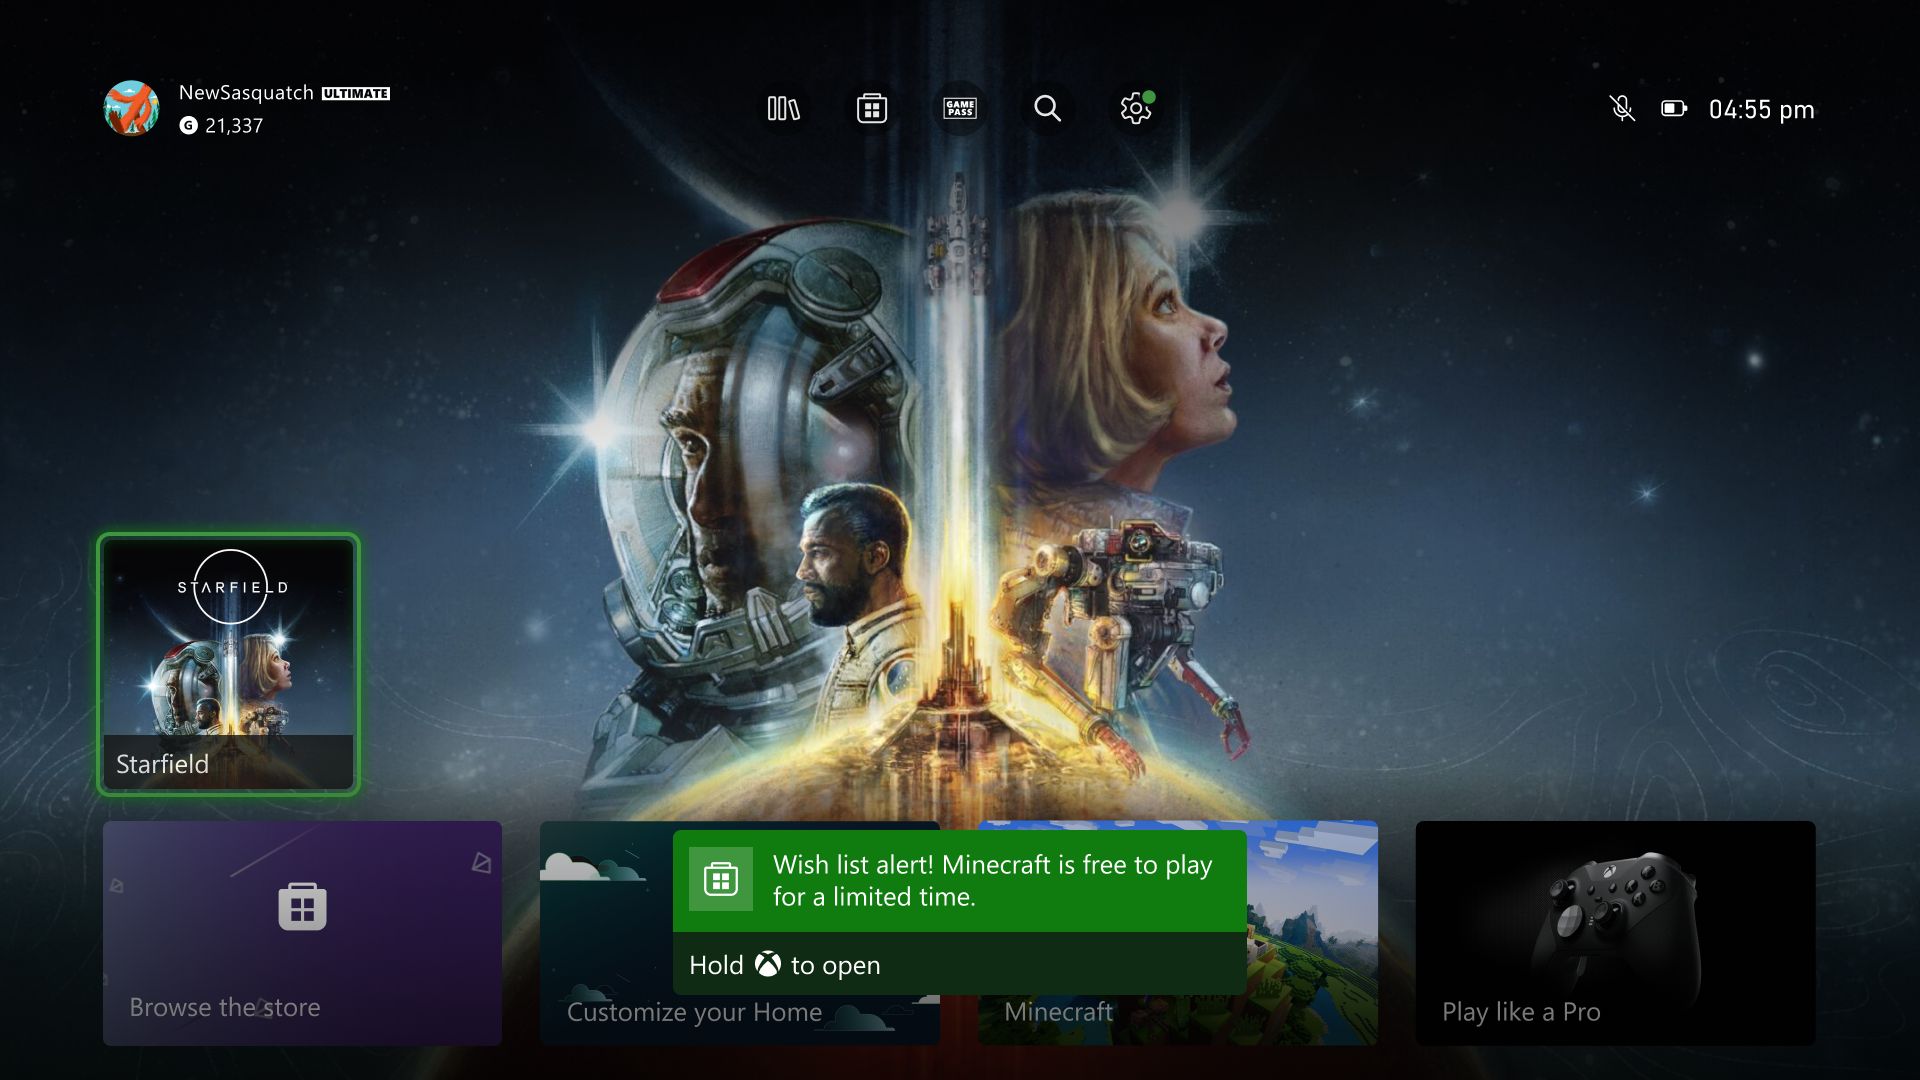 Wonka x Xbox : La première manette officielle comestible et une console  d'inspiration sucrée - Xbox Wire en Francais